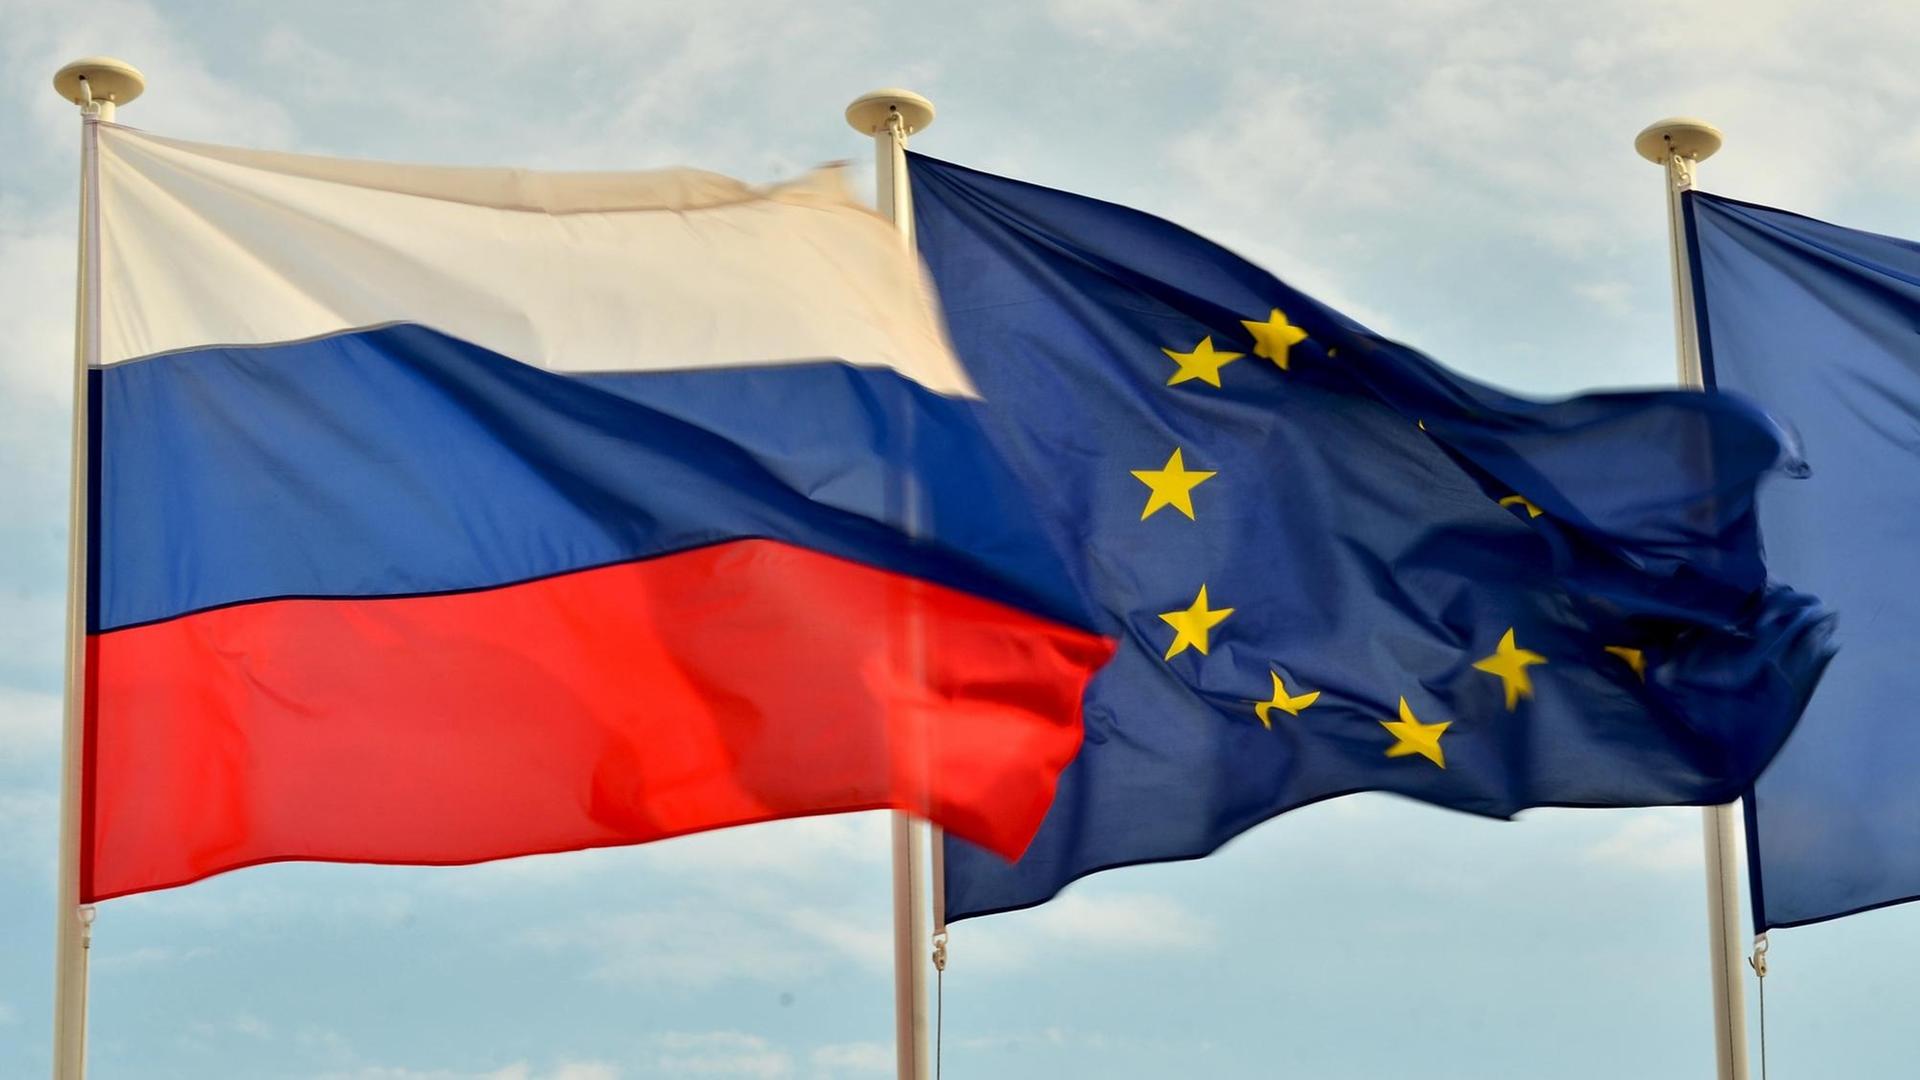 Flaggen von Russland und der EU